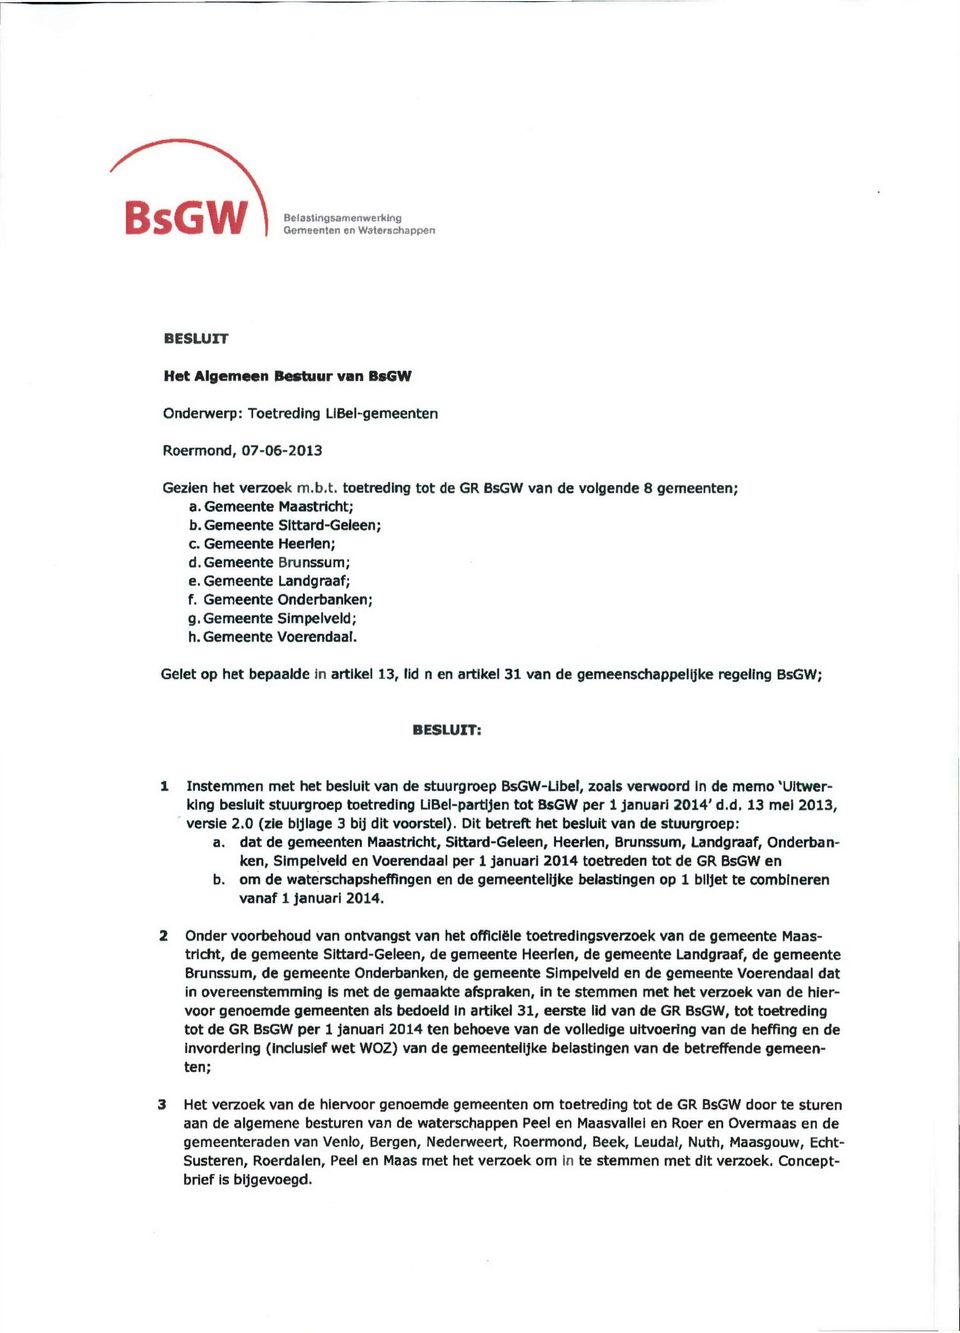 Gelet op het bepaalde in artikel 13, lid n en artikel 31 van de gemeenschappelijke regeling BsGW; BESLUIT: Instemmen met het besluit van de stuurgroep BsGW-Llbel, zoals verwoord in de memo